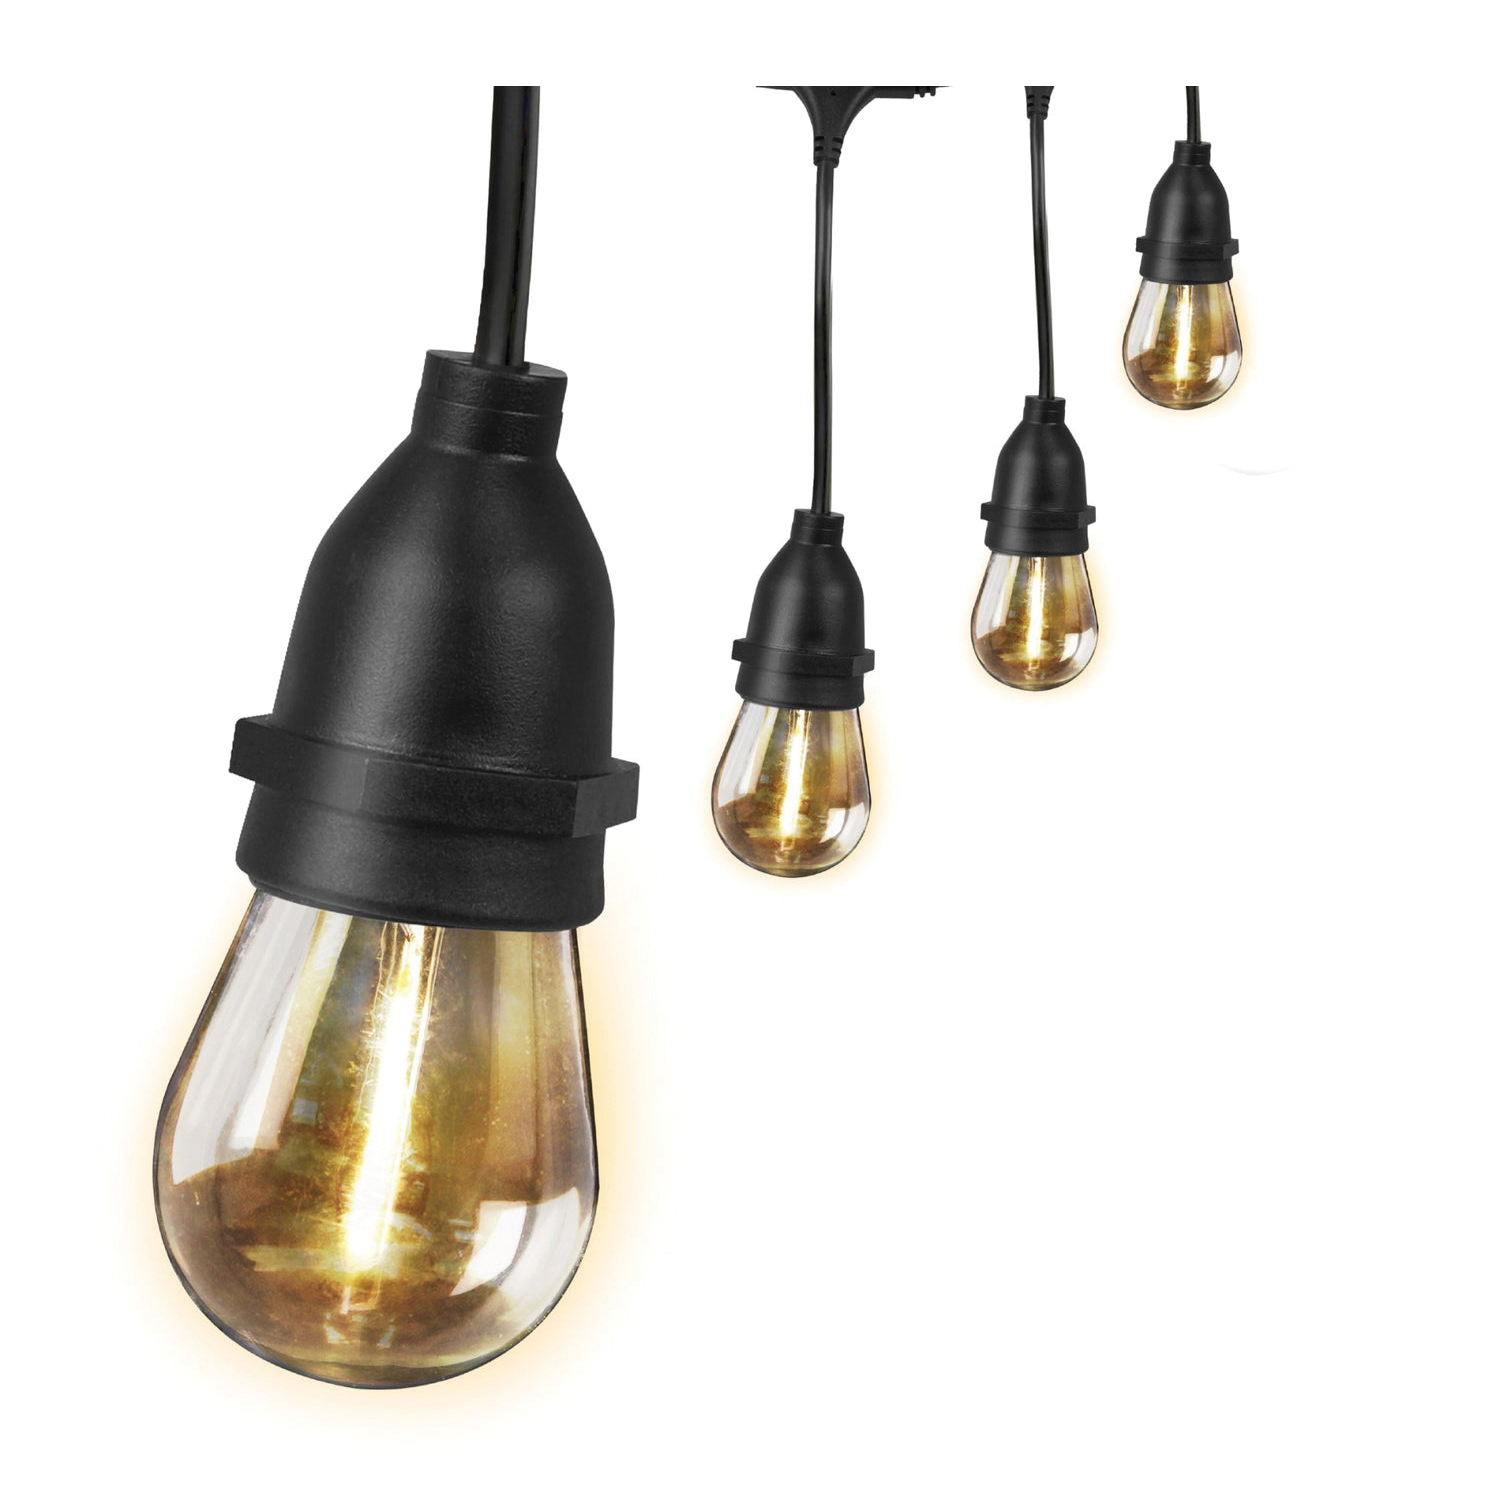 SL20-10/FIL String Light, 120 V, 12-Lamp, E26 Base, S14 80 CRI LED Lamp, 15,000 hr Average Life